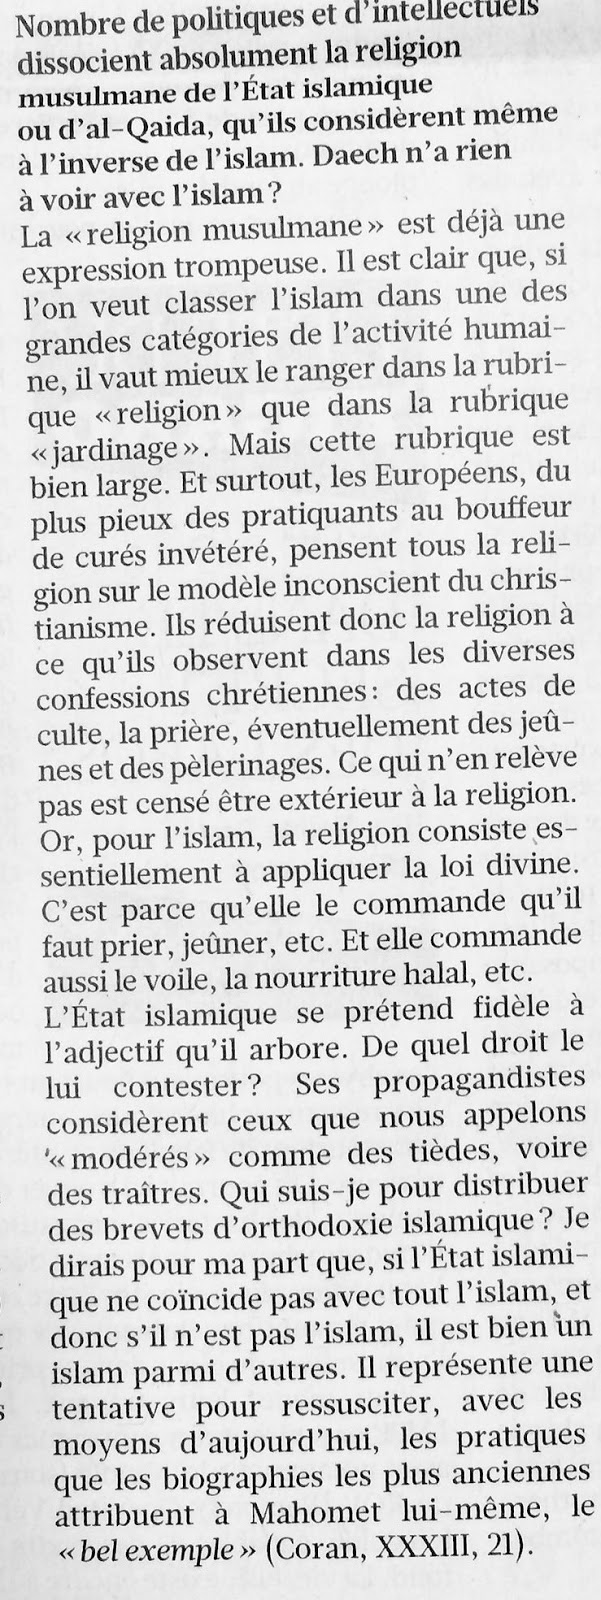 Pierre de Brague on X: Honteux !  / X